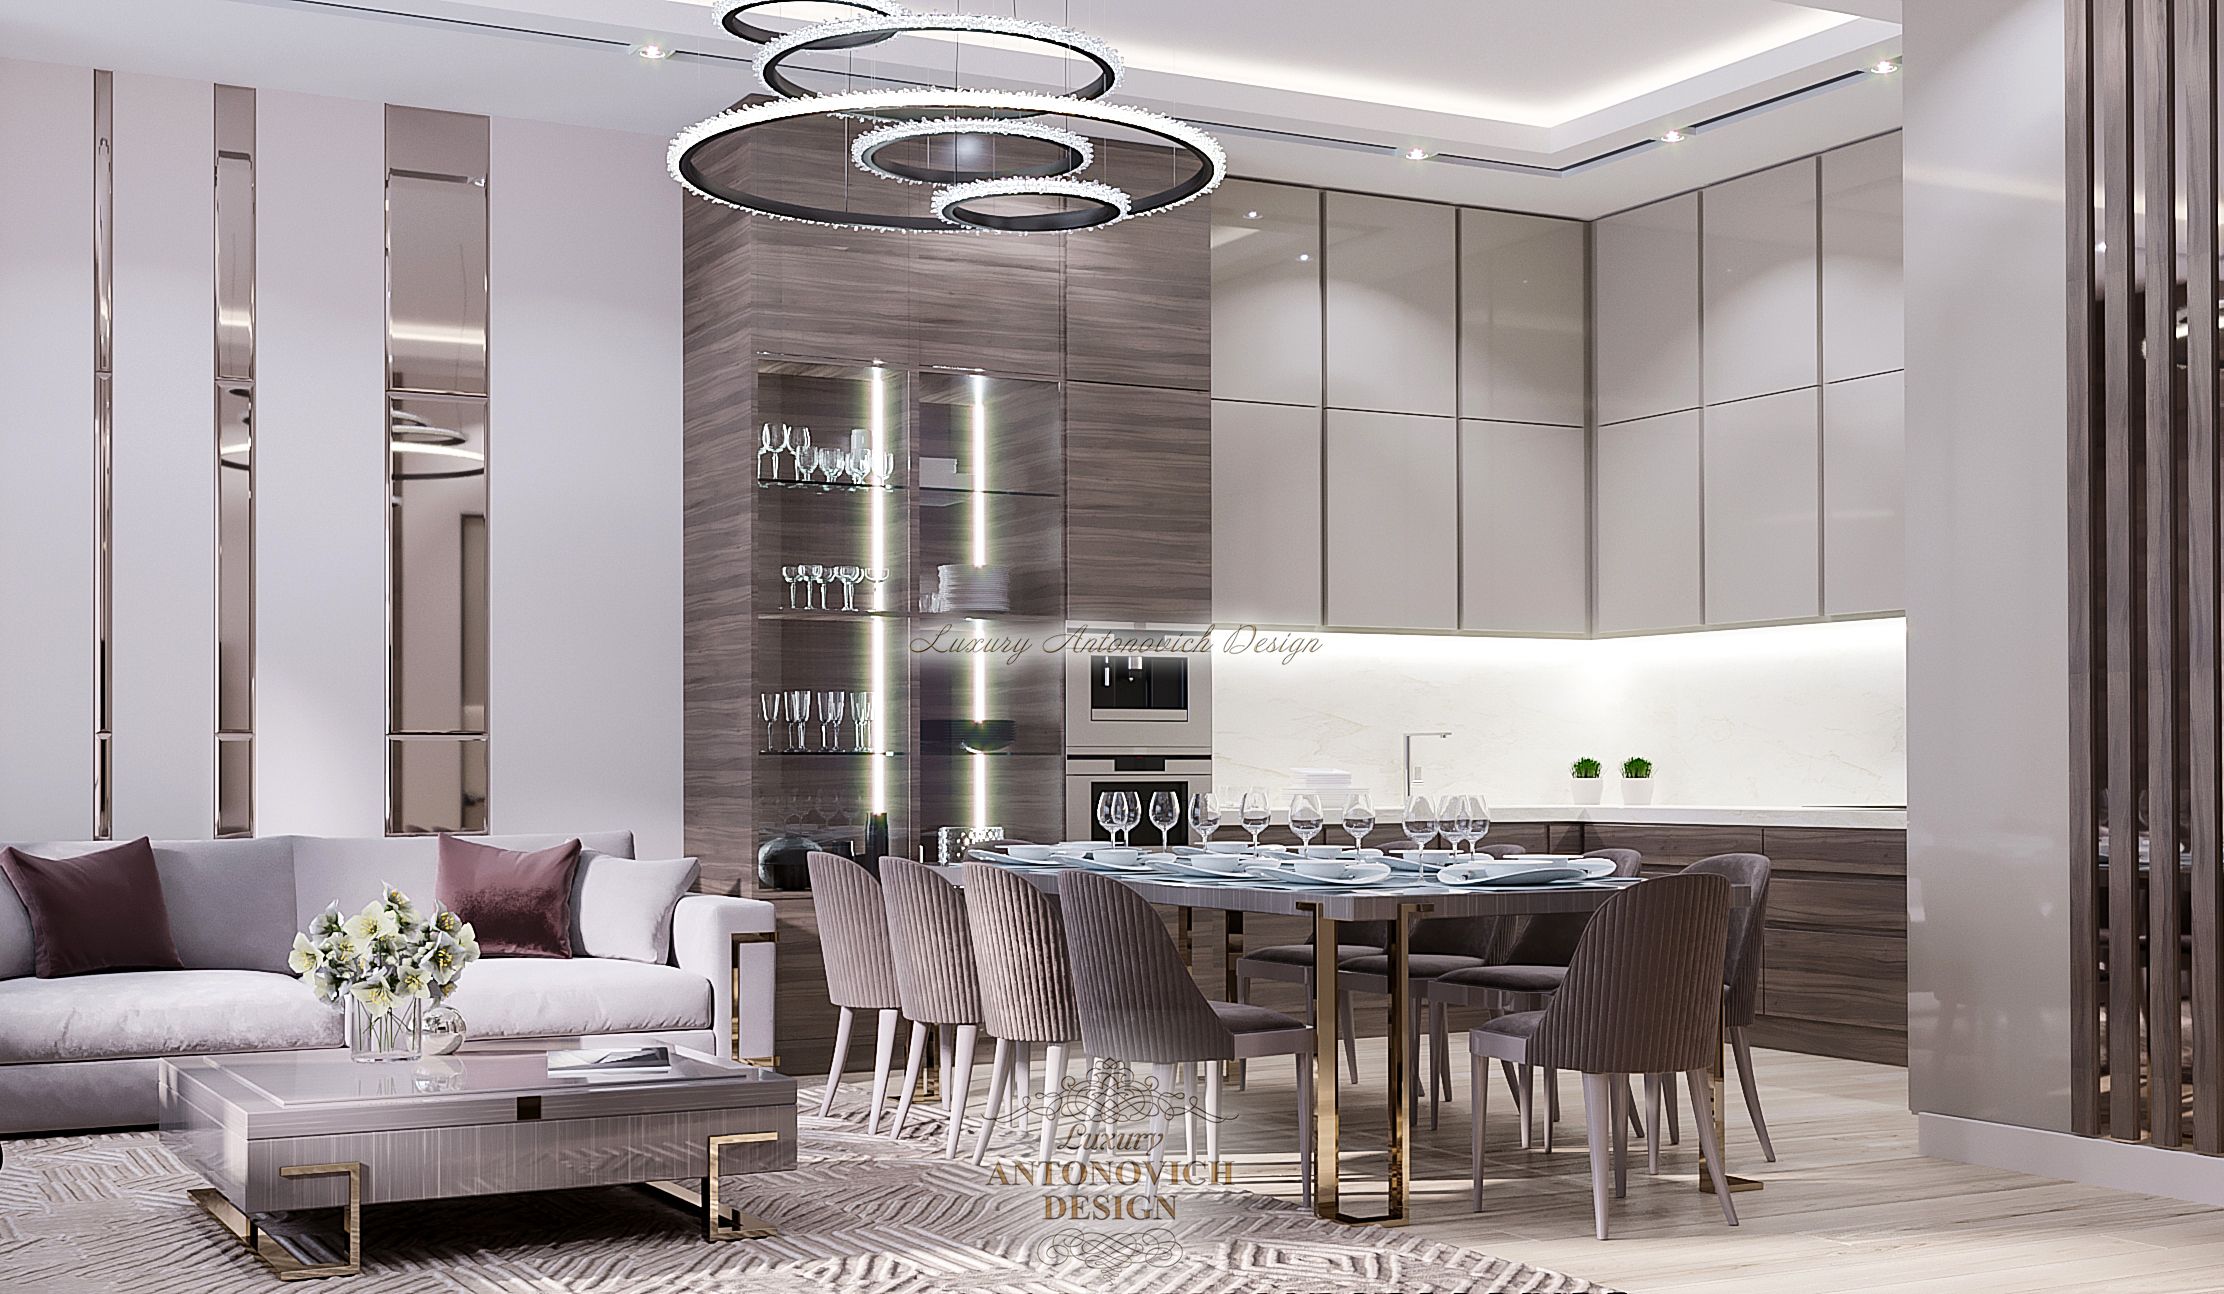 Современный интерьер Кухня гостинная в Праге 1 (10), Luxury Antonovich Design